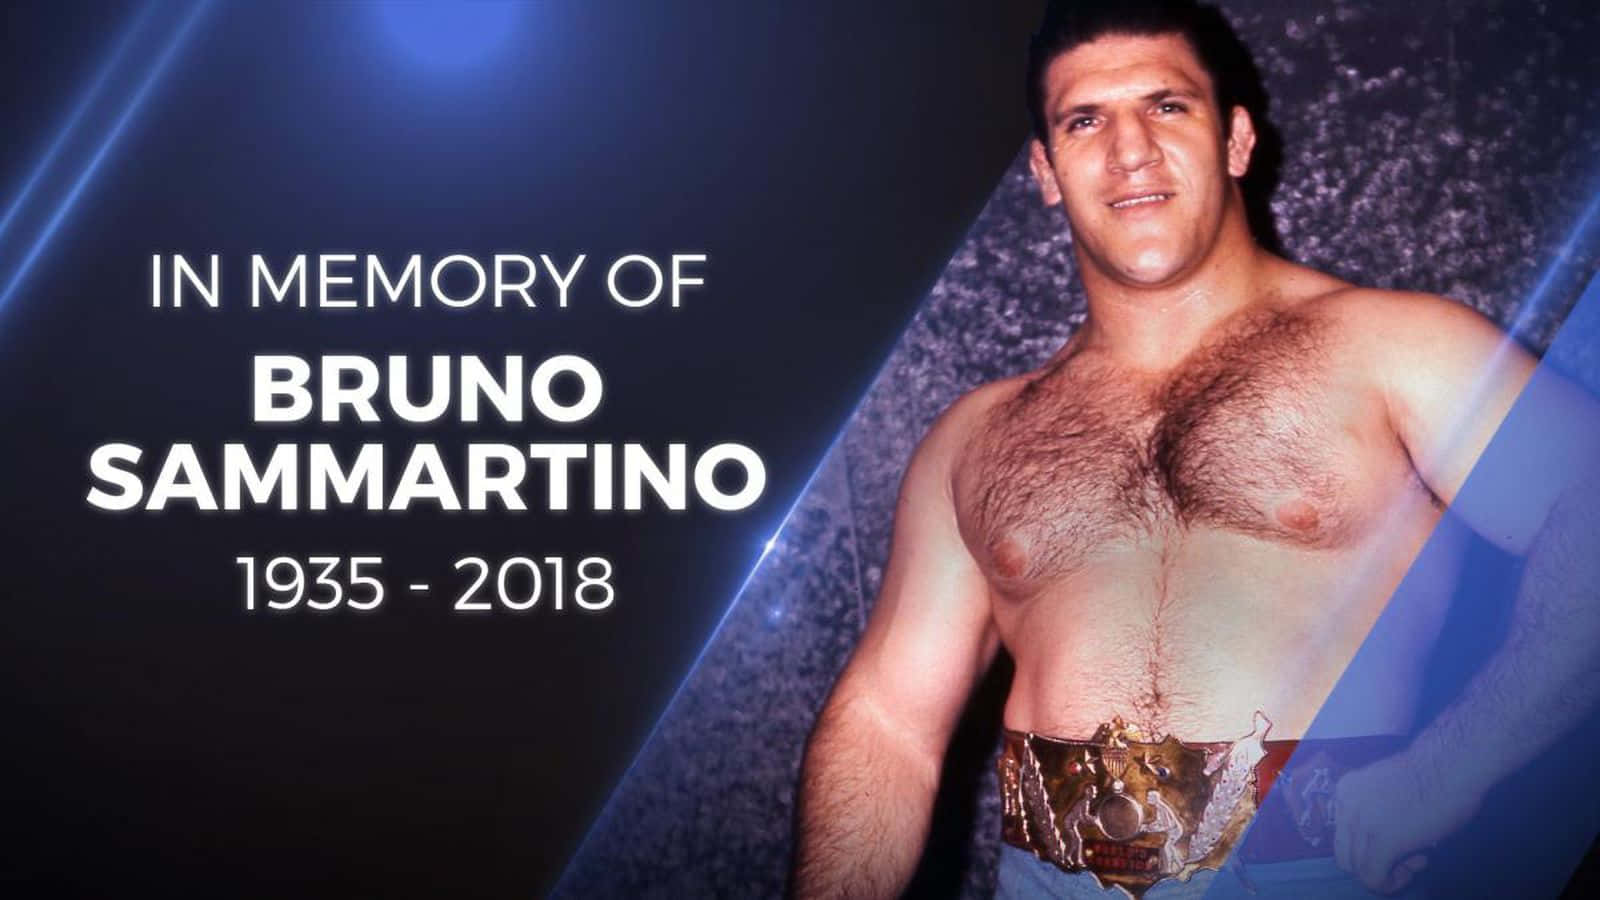 "A Tribute to Bruno Sammartino, a Pro Wrestling Legend" Wallpaper